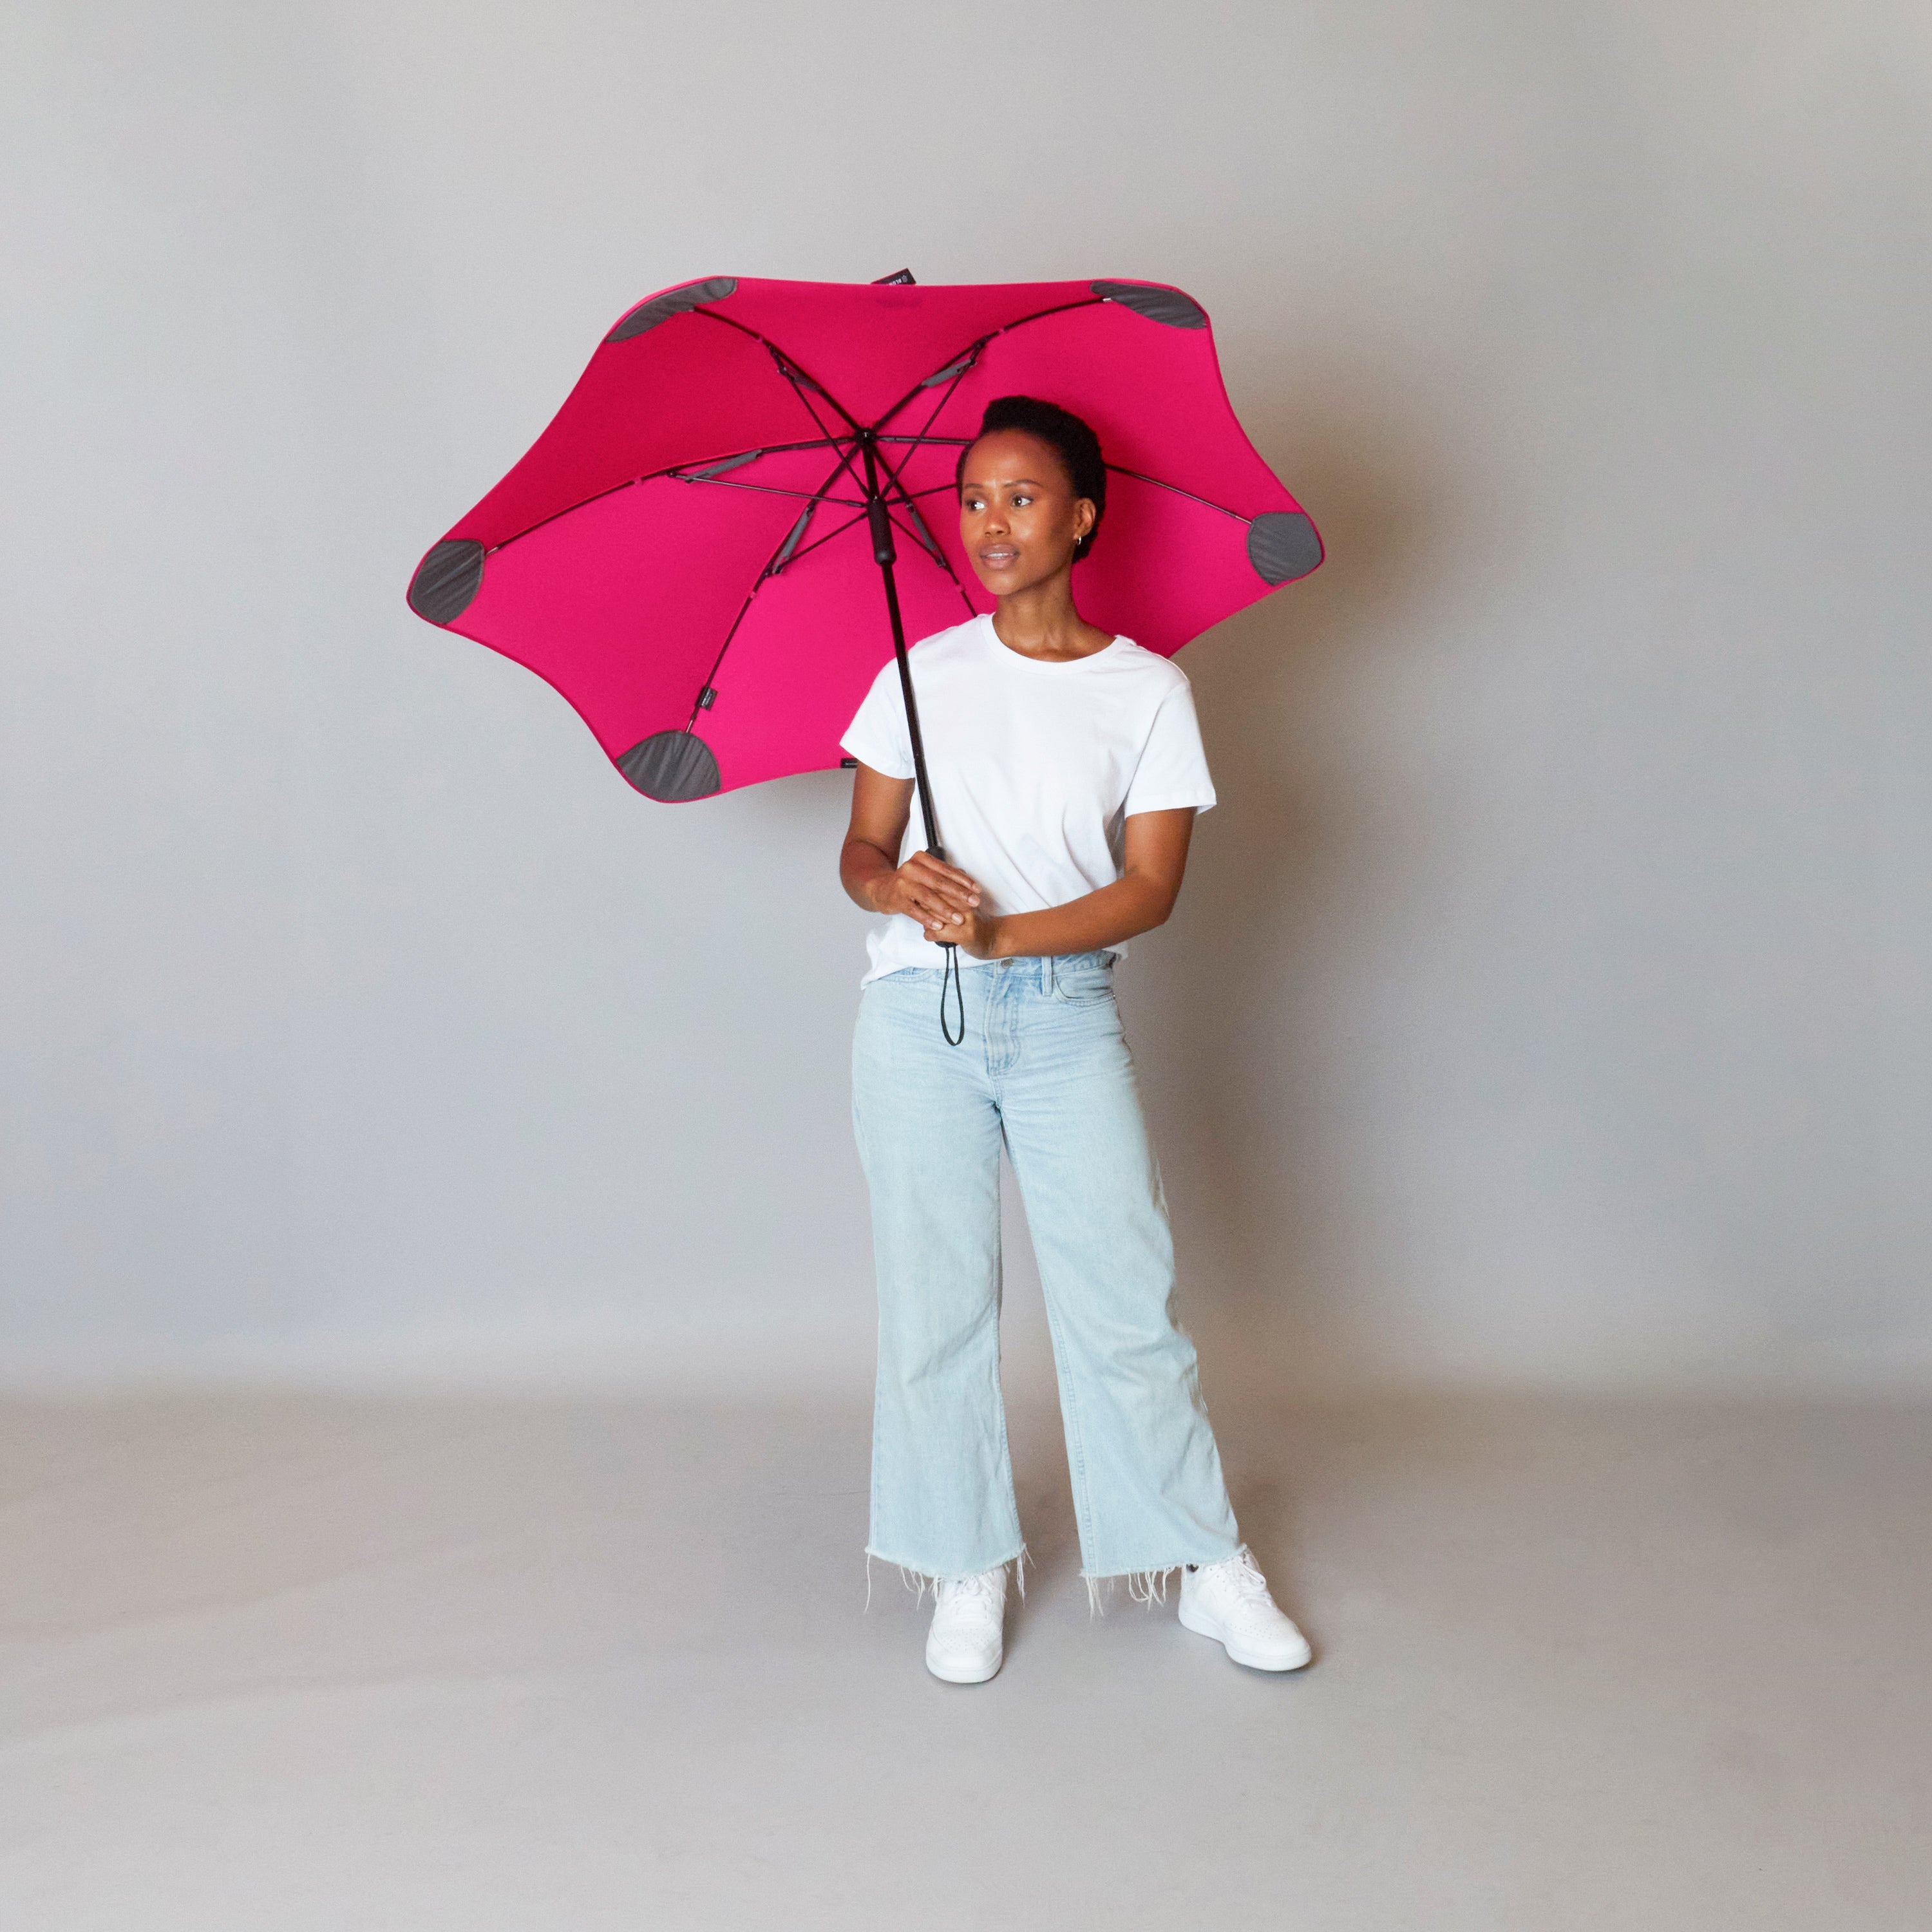 2020 Classic Pink Blunt Umbrella Model Front View